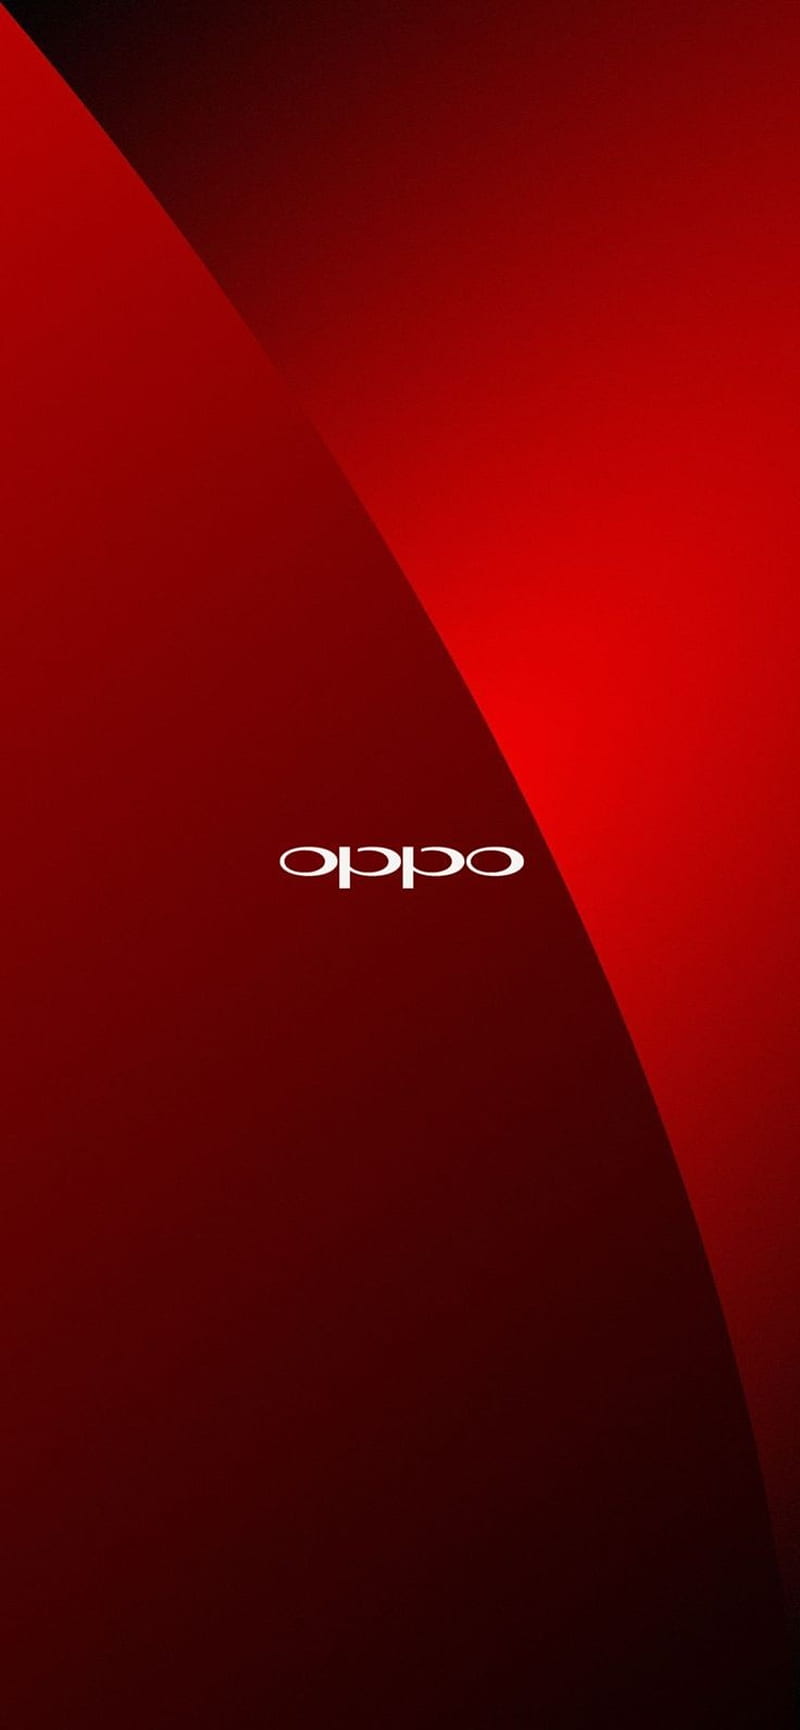 Oppo HD Wallpapers - Top Những Hình Ảnh Đẹp